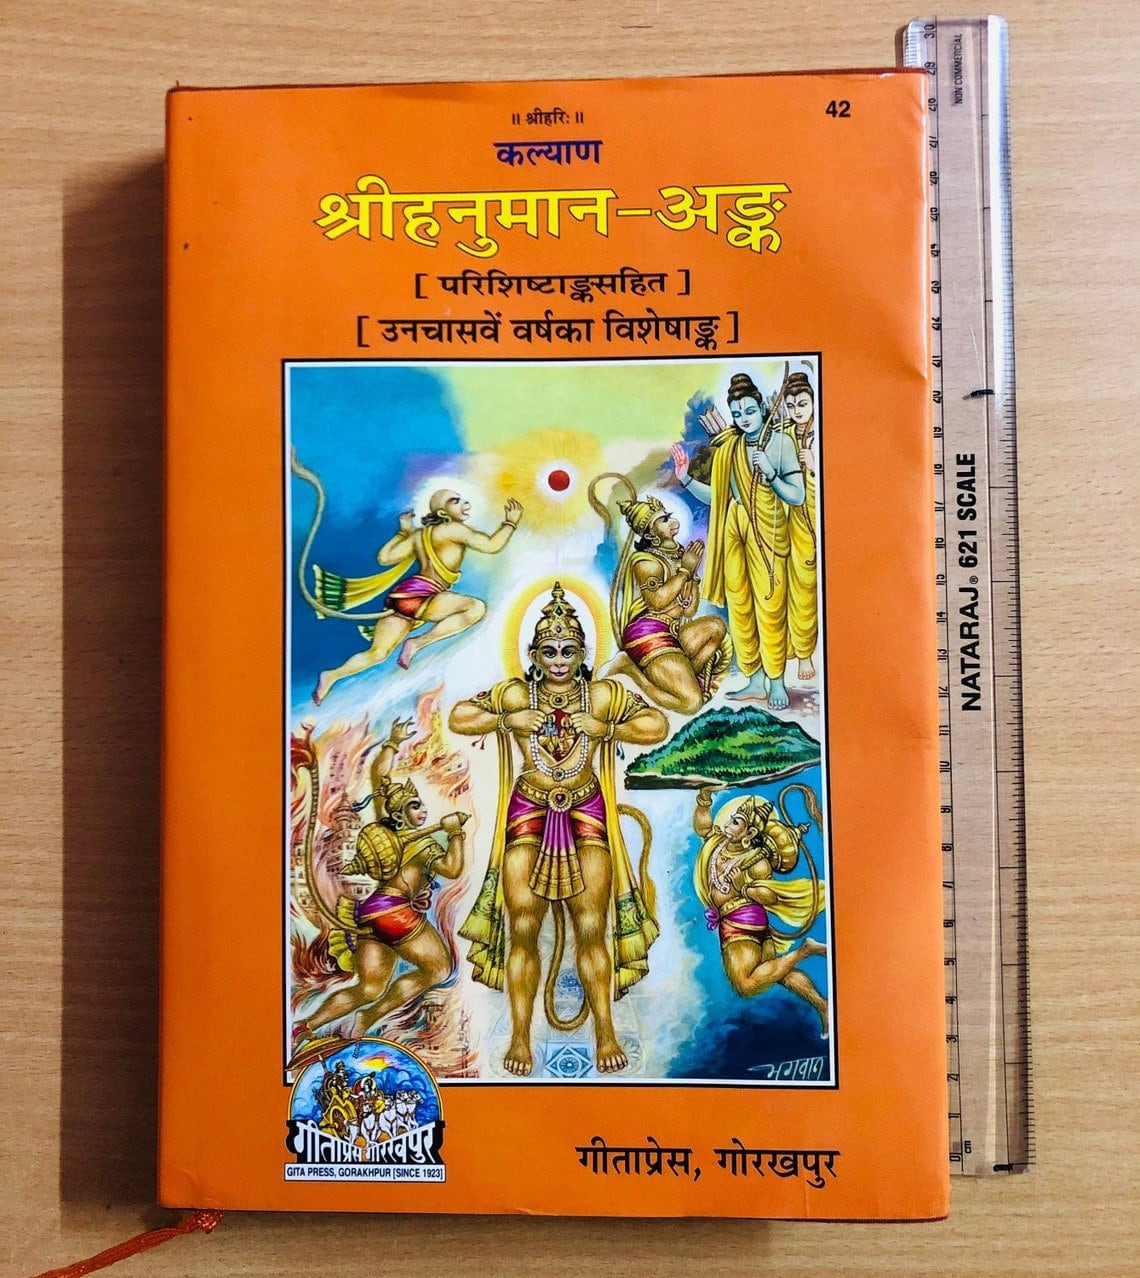 1140px x 1278px - Sri Hanuman Ank by Gita Press Gorakhpur Hindi Sanskrit Book - Etsy Finland